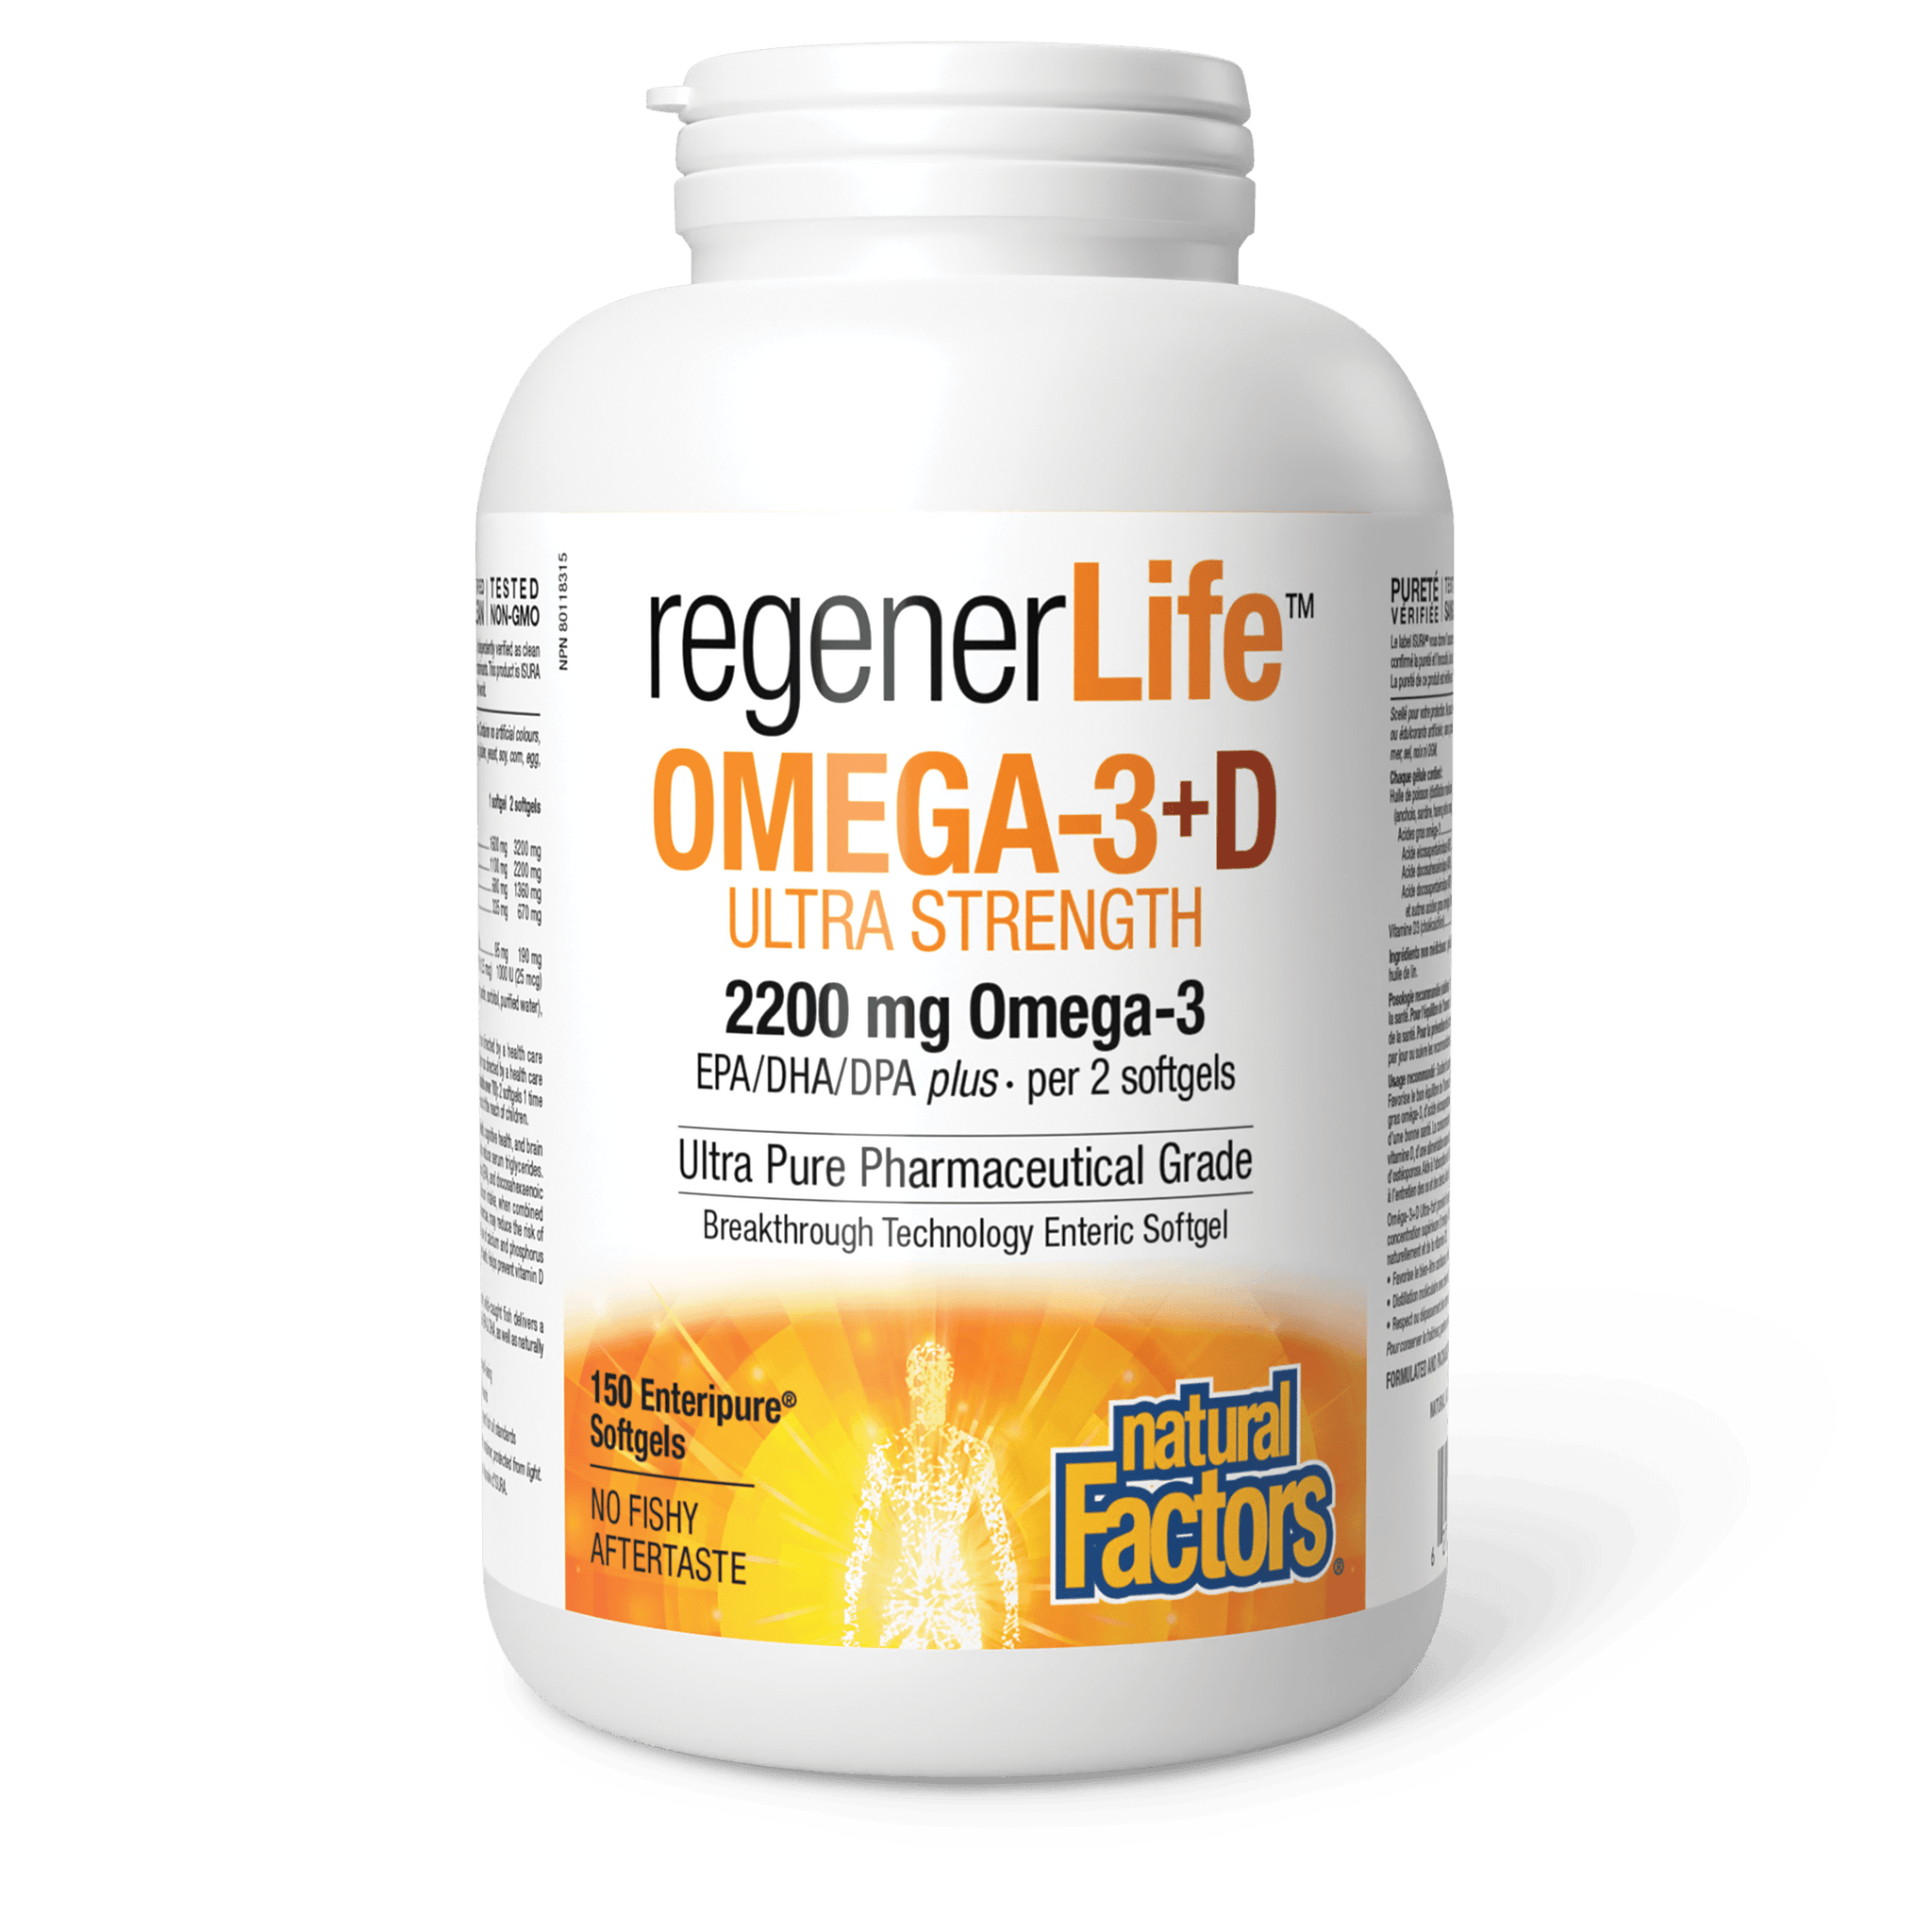 Natural Factors RegenerLife Omega-3+D Ultra Strength 150 Softgels